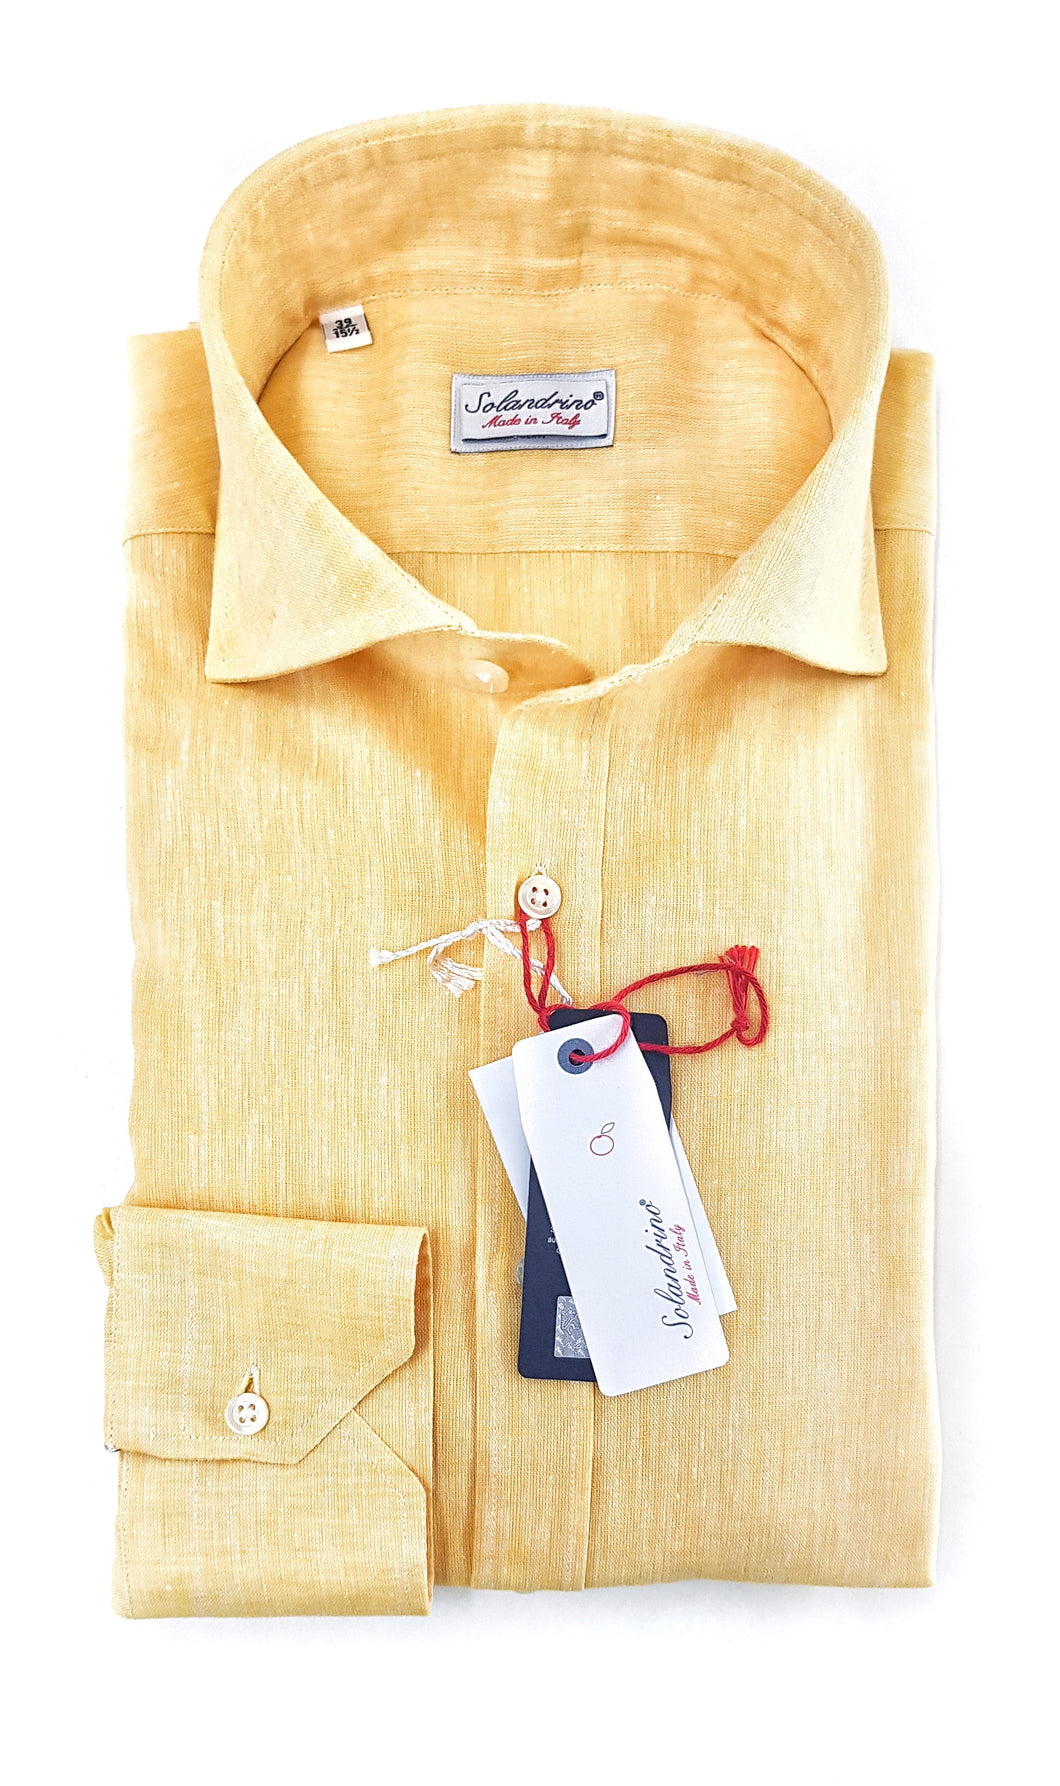 Camicia gialla puro Lino made in Italy - yellow Linen Shirt